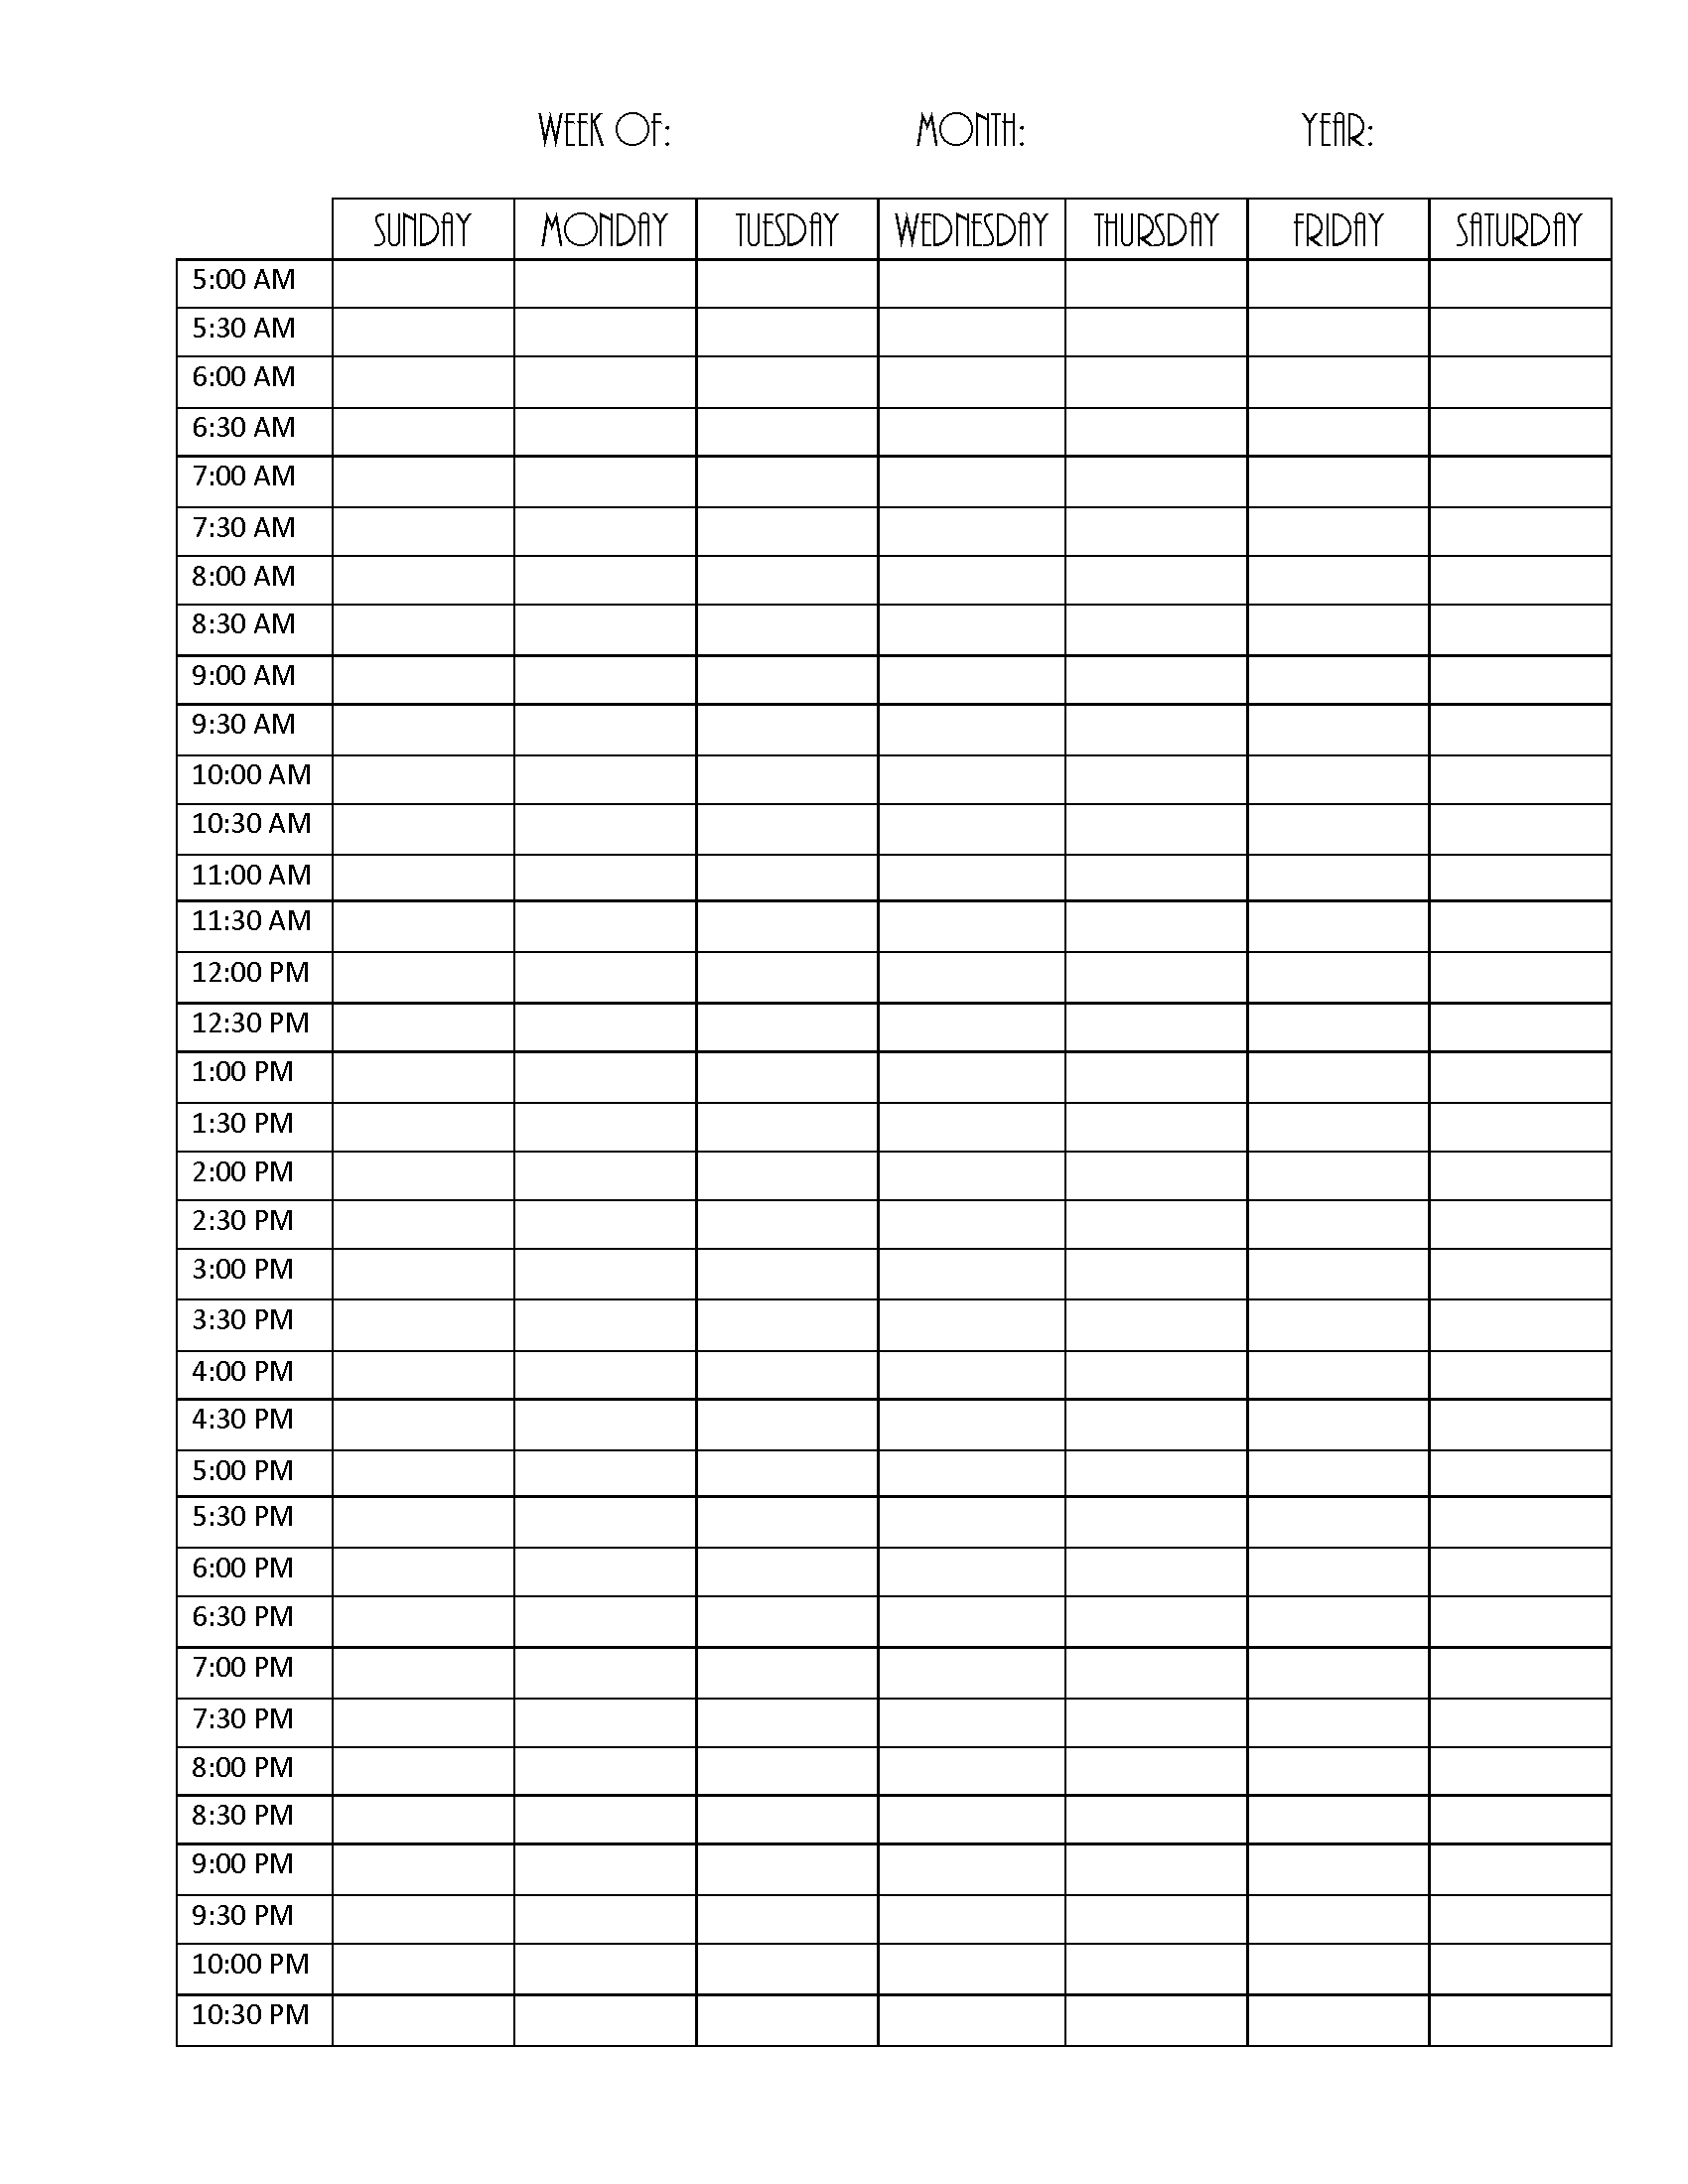 Free Printable Blank Weekly Schedule